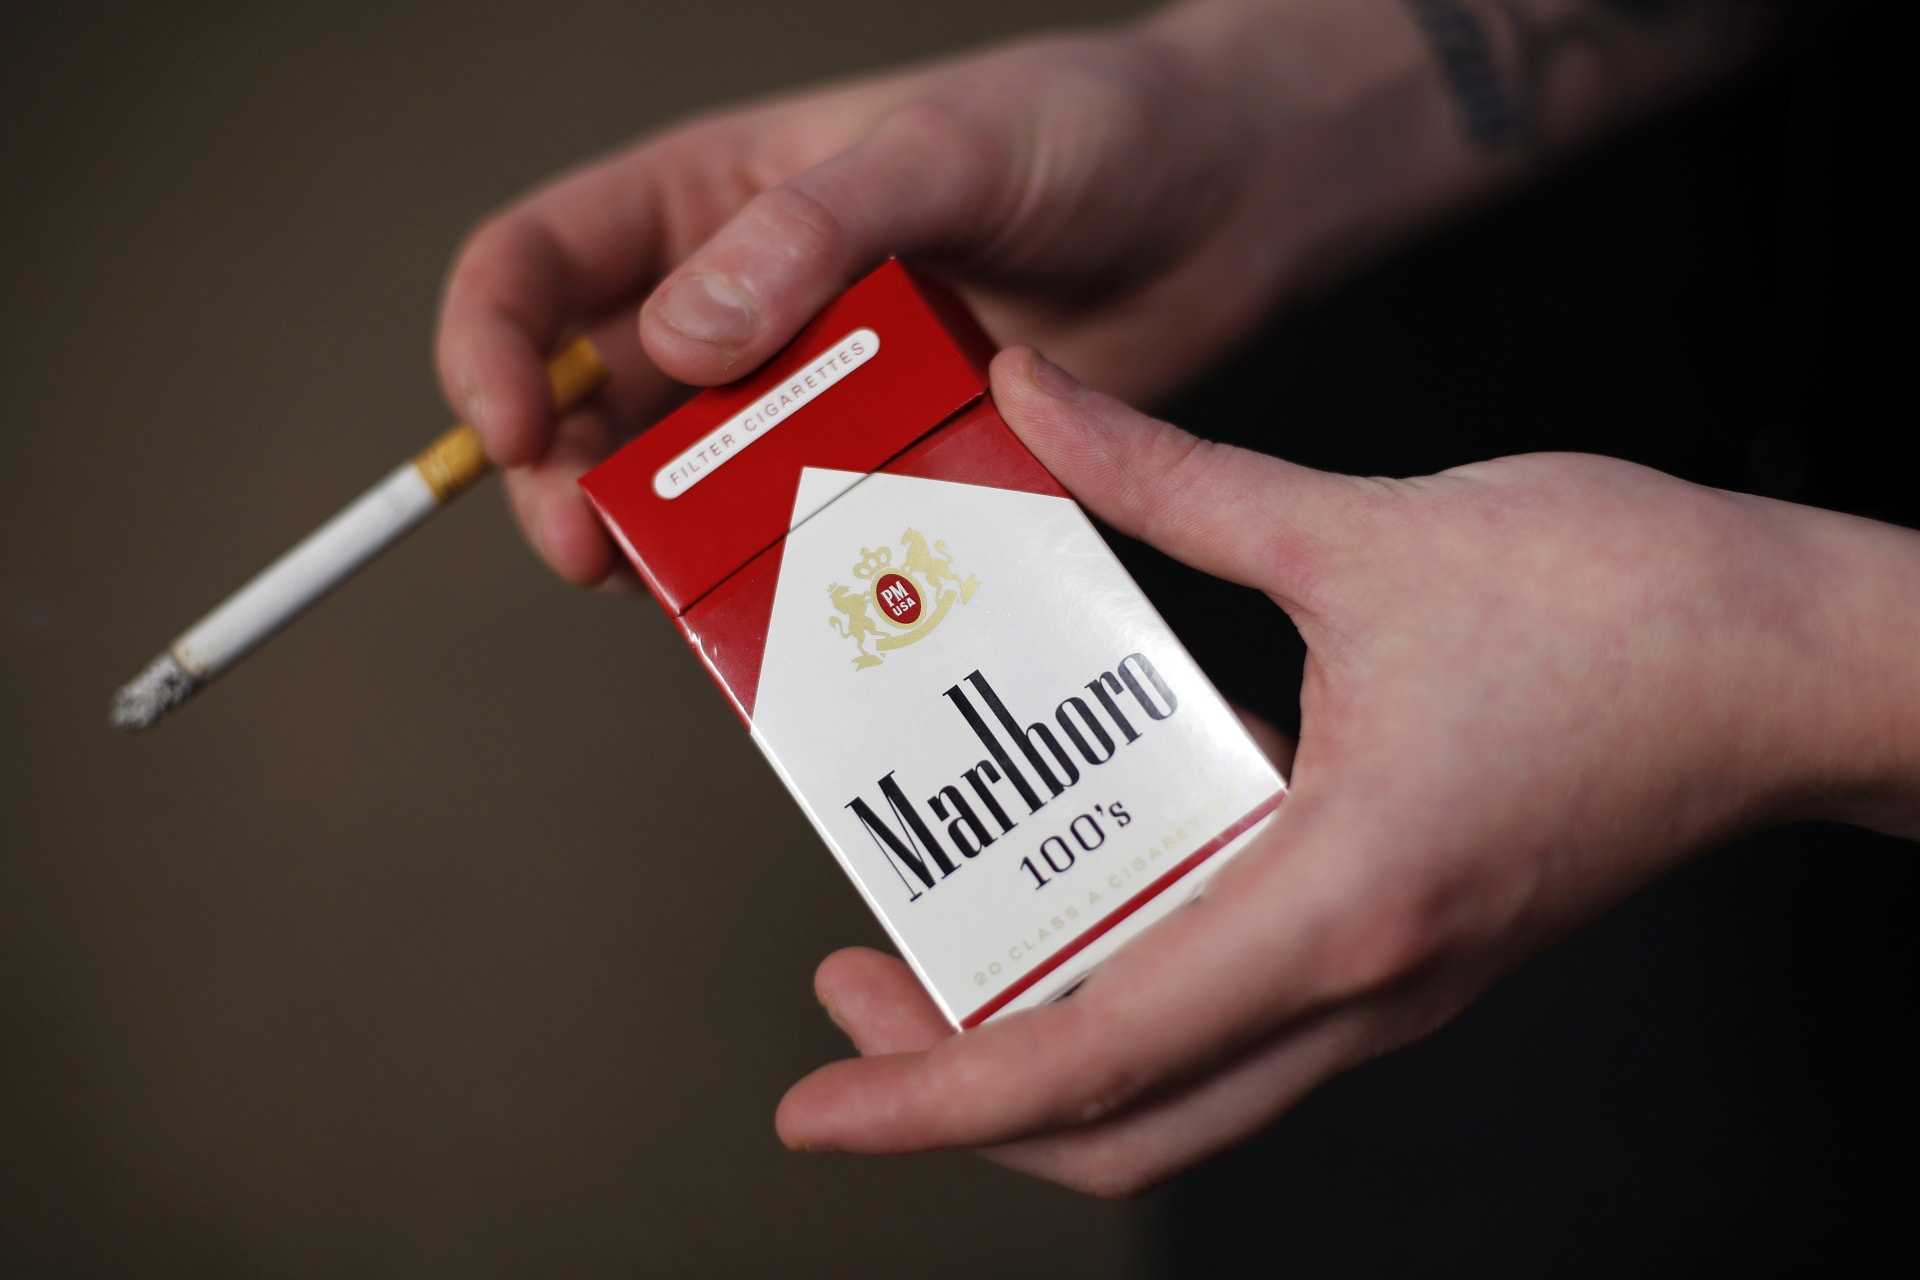 Philip Morris přestane v příštích deseti letech v Británii prodávat cigarety. Z pultů obchodů tak po více než sto letech zmizí značka Marlboro.